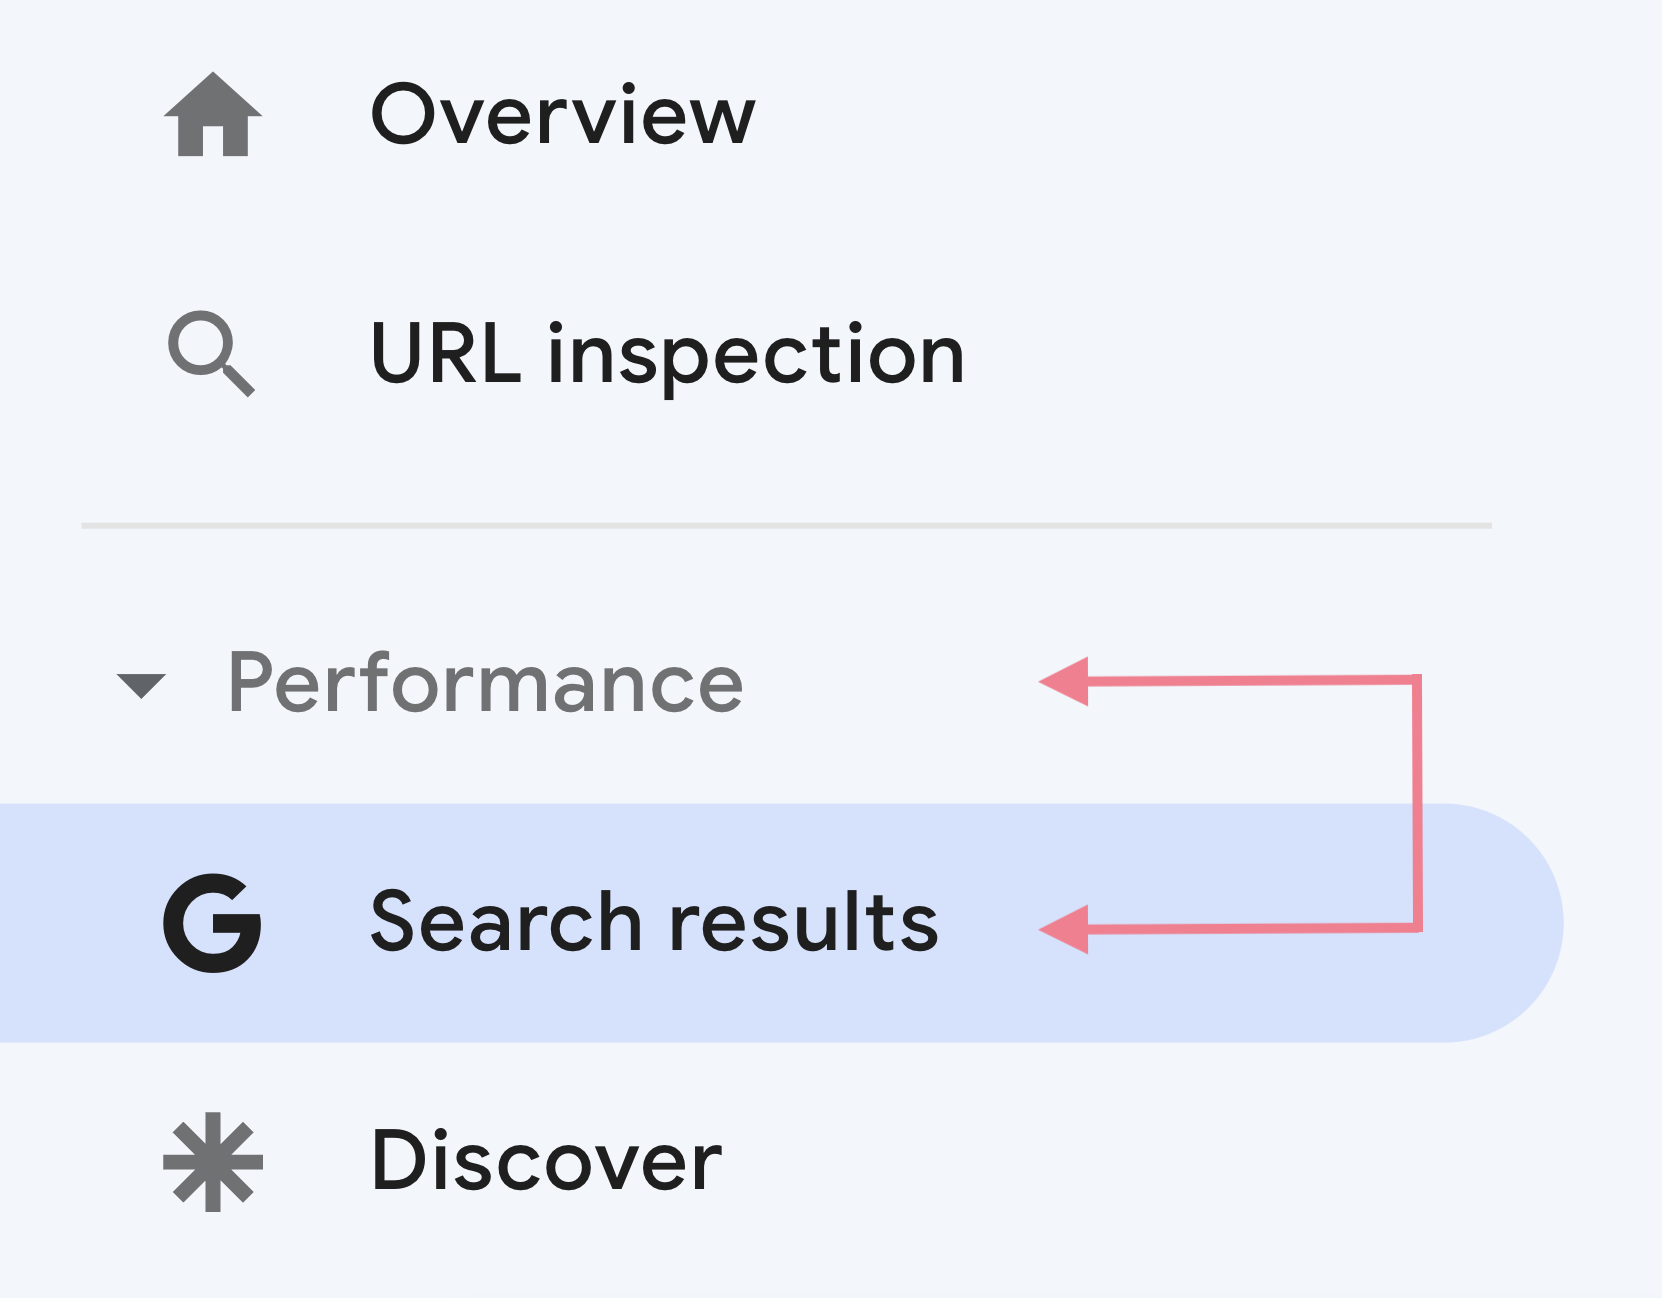 kết quả tìm kiếm trong bảng điều khiển Google Search Console